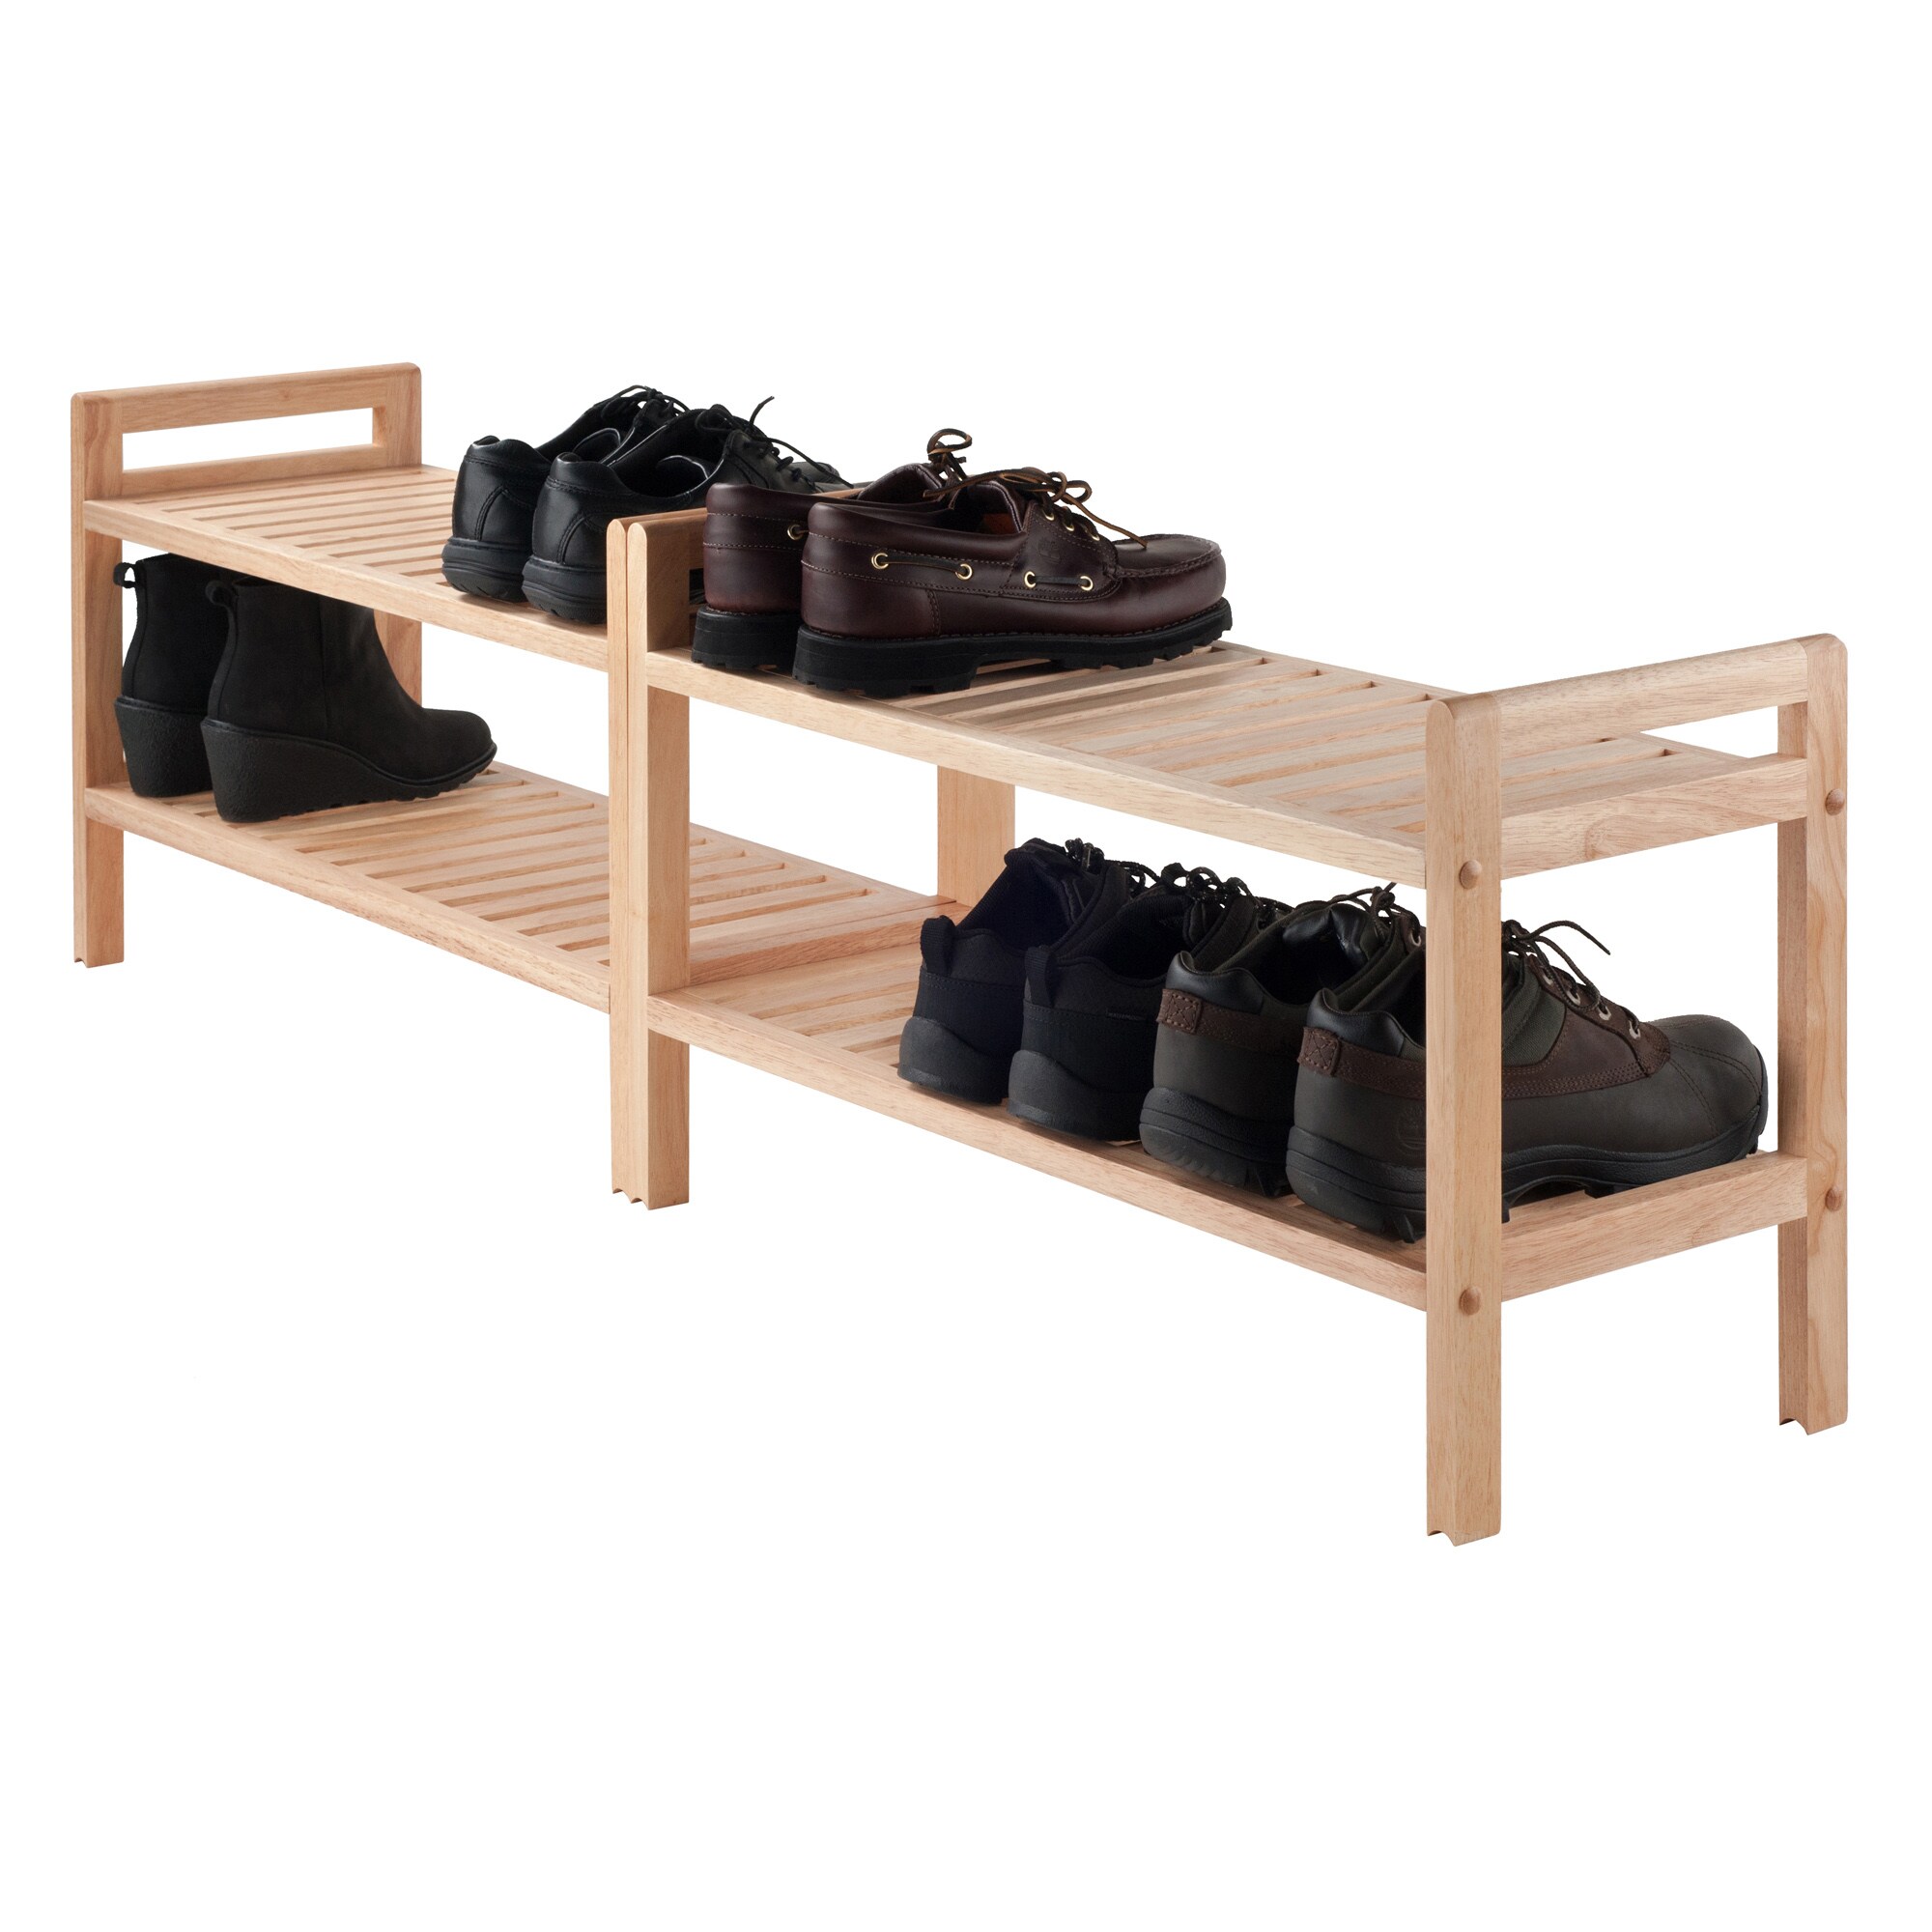  Veemuaro Shoe Storage Box, Wooden Stackable Shoe